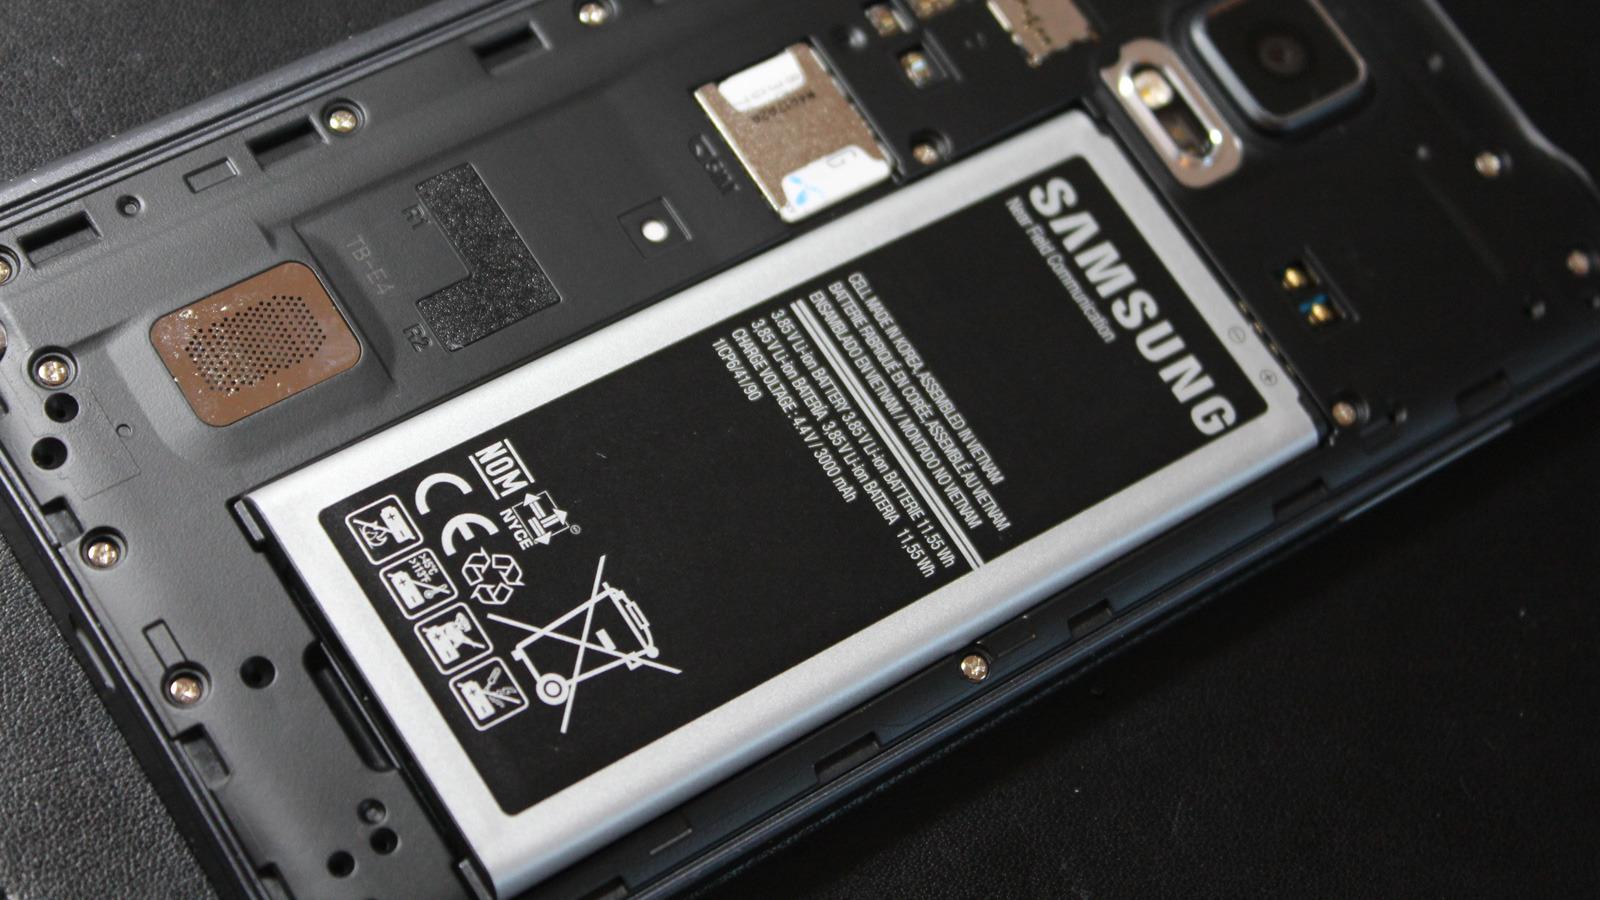 Dekselet på baksiden kan tas av, så du kommer til batteri, SIM-kort og minnekort.Foto: Espen Irwing Swang, Tek.no